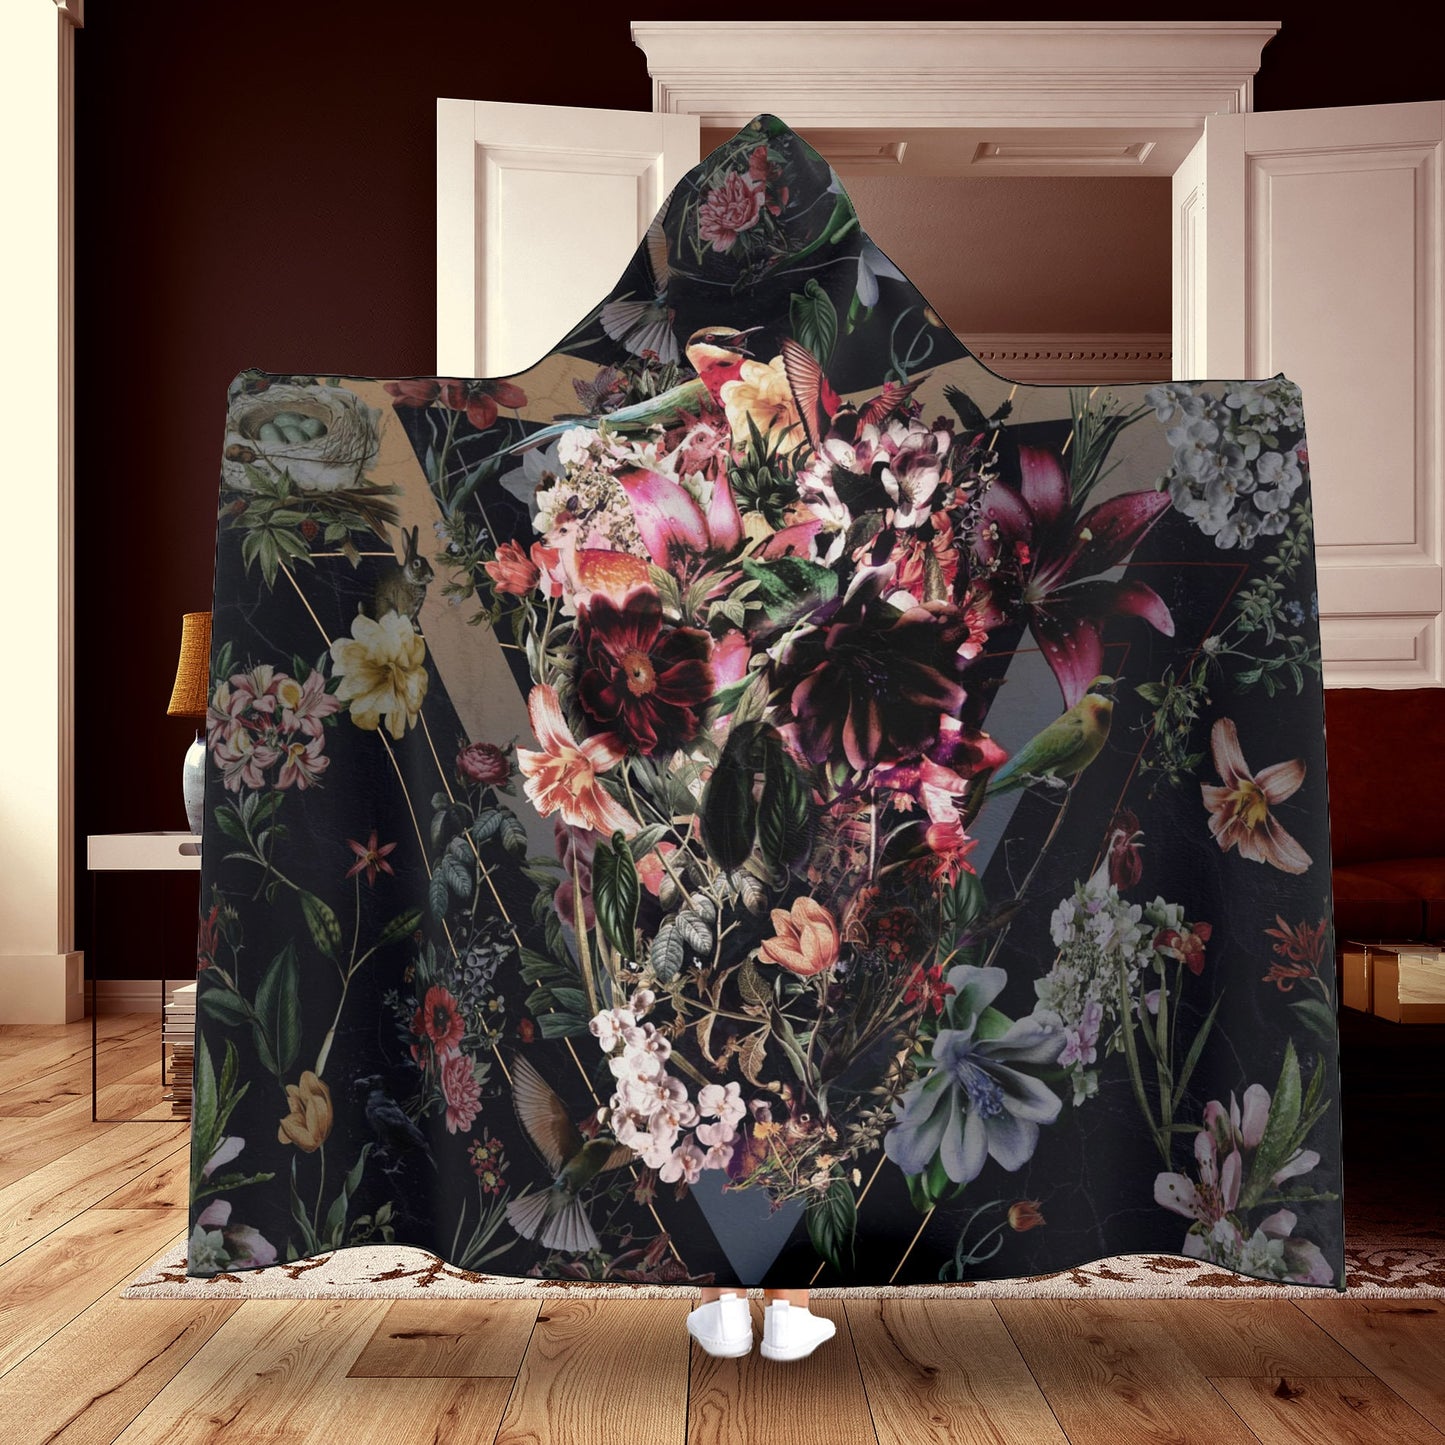 Floral Hooded Blanket, Flower Skull Cape Blanket, Gothic Sugar Skull Cozy Blanket Gift, Floral Skull Hooded Blanket Gift, Boho Skull Blanket